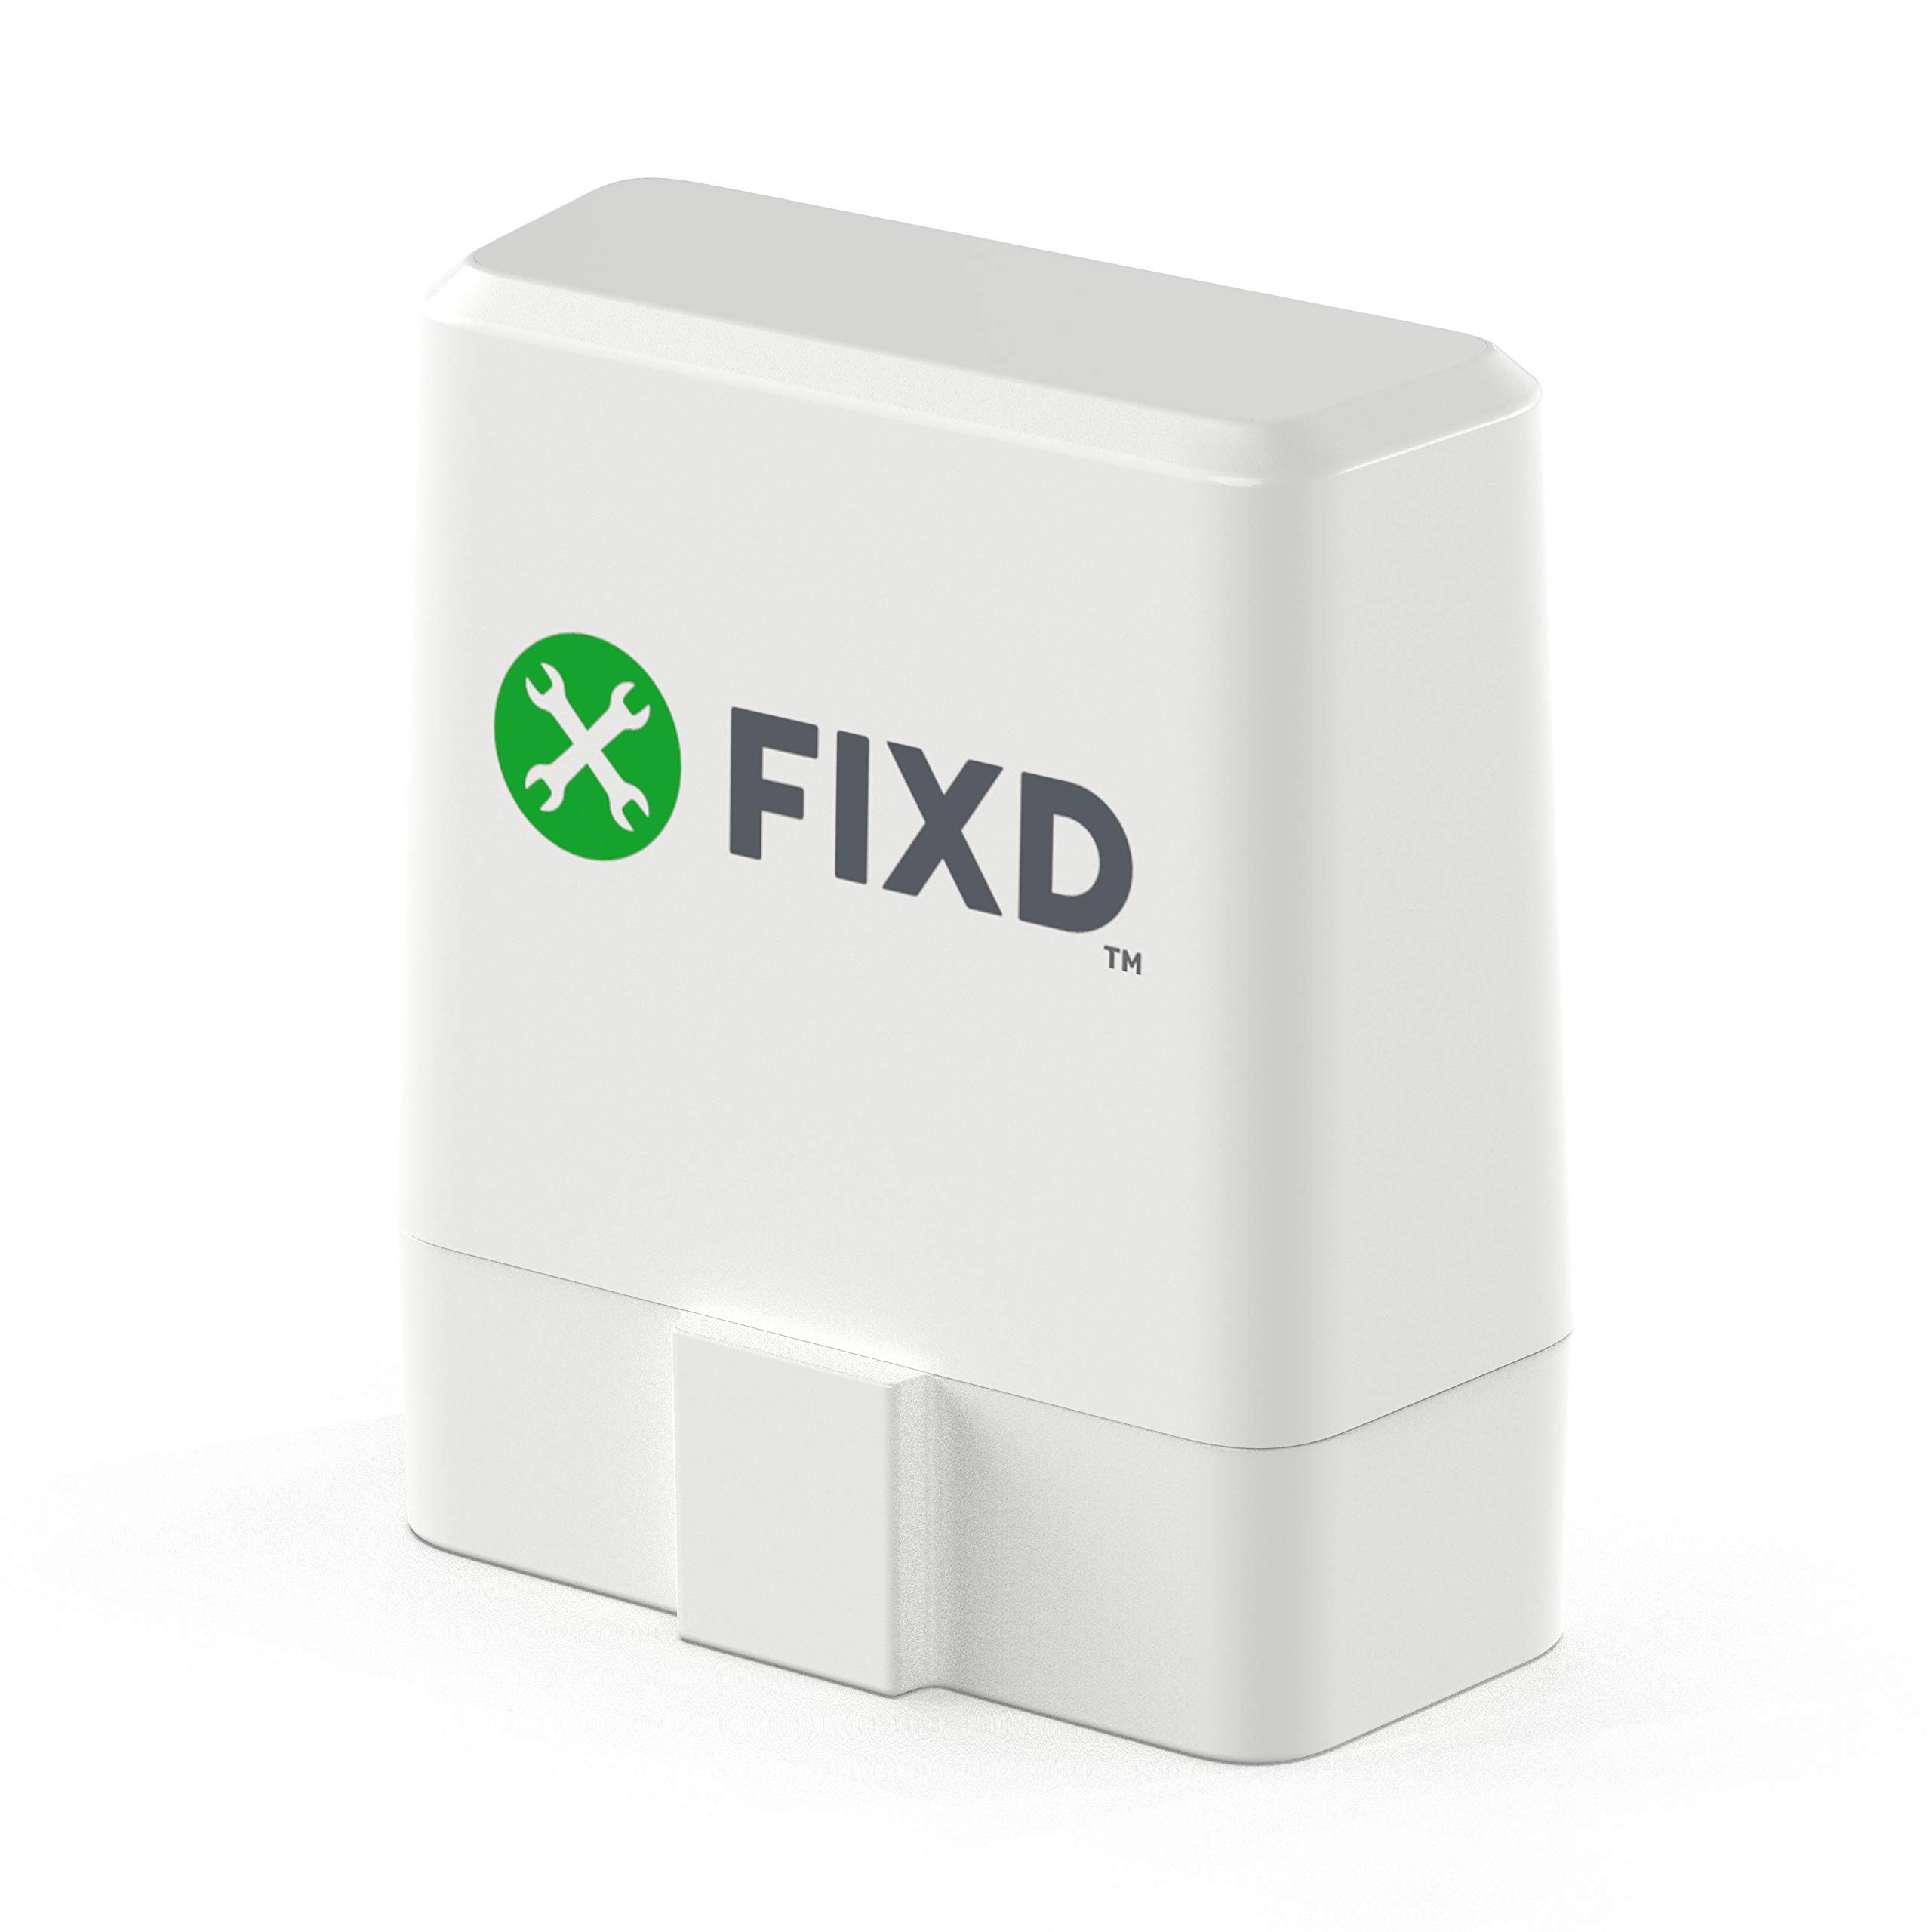  FIXD 車用 Bluetooth OBD2 スキャナ - iPhone & Android 用車コードリーダー & スキャンツール - エンジンをチェックし、すべての車と車両を修復するためのワ...